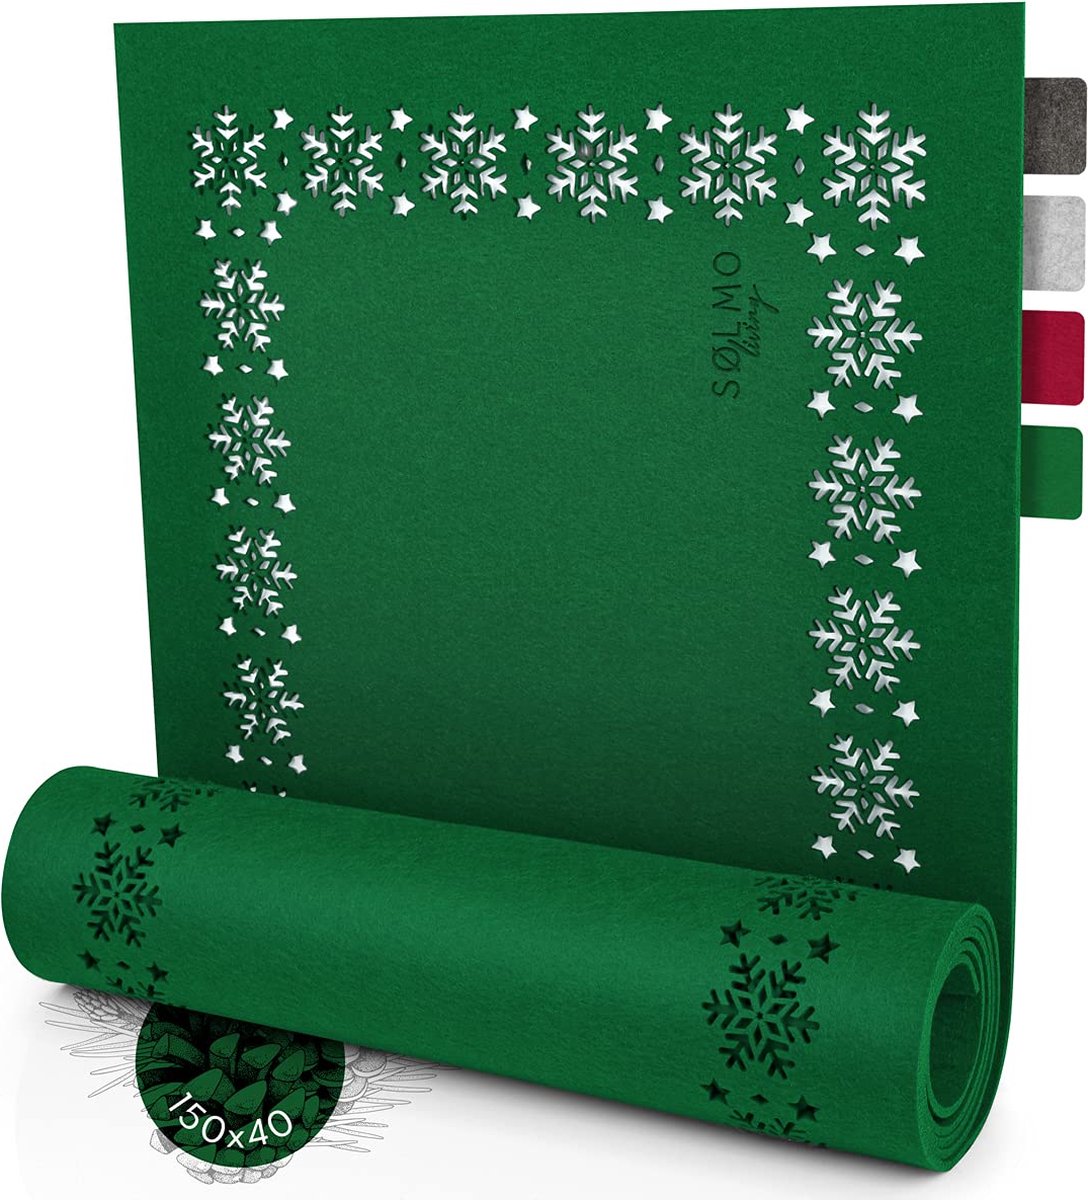 Sölmo® - Kerstgroene Vilt Tafelloper - Tafellint Kerstversiering - Vilt Loper Tafelkleed Winter (150x40 cm)